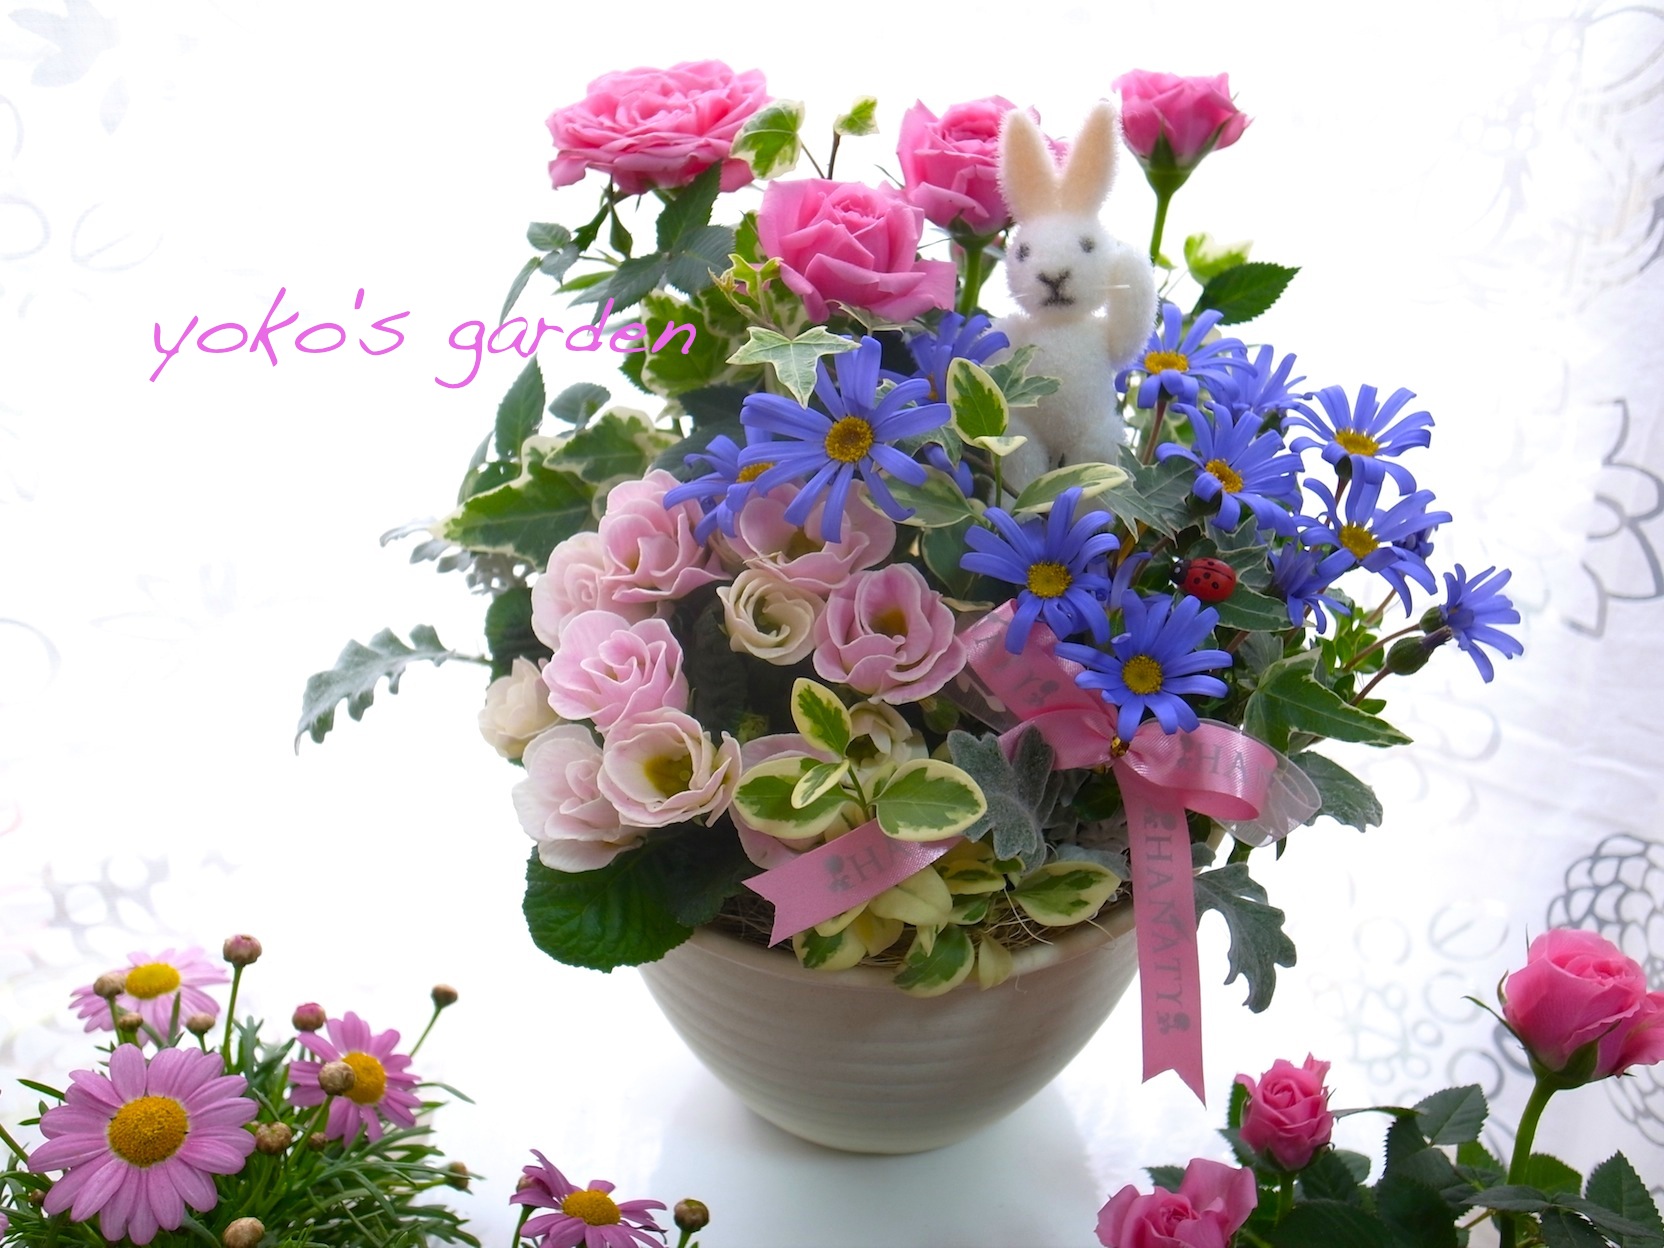 バラ プレゼント バラ お花のエレガントな花鉢ギフト寄せ植え 送料無料 数量限定 花のプレゼントは人気の寄せ植え 鉢植えギフト通販 Yoko S Garden